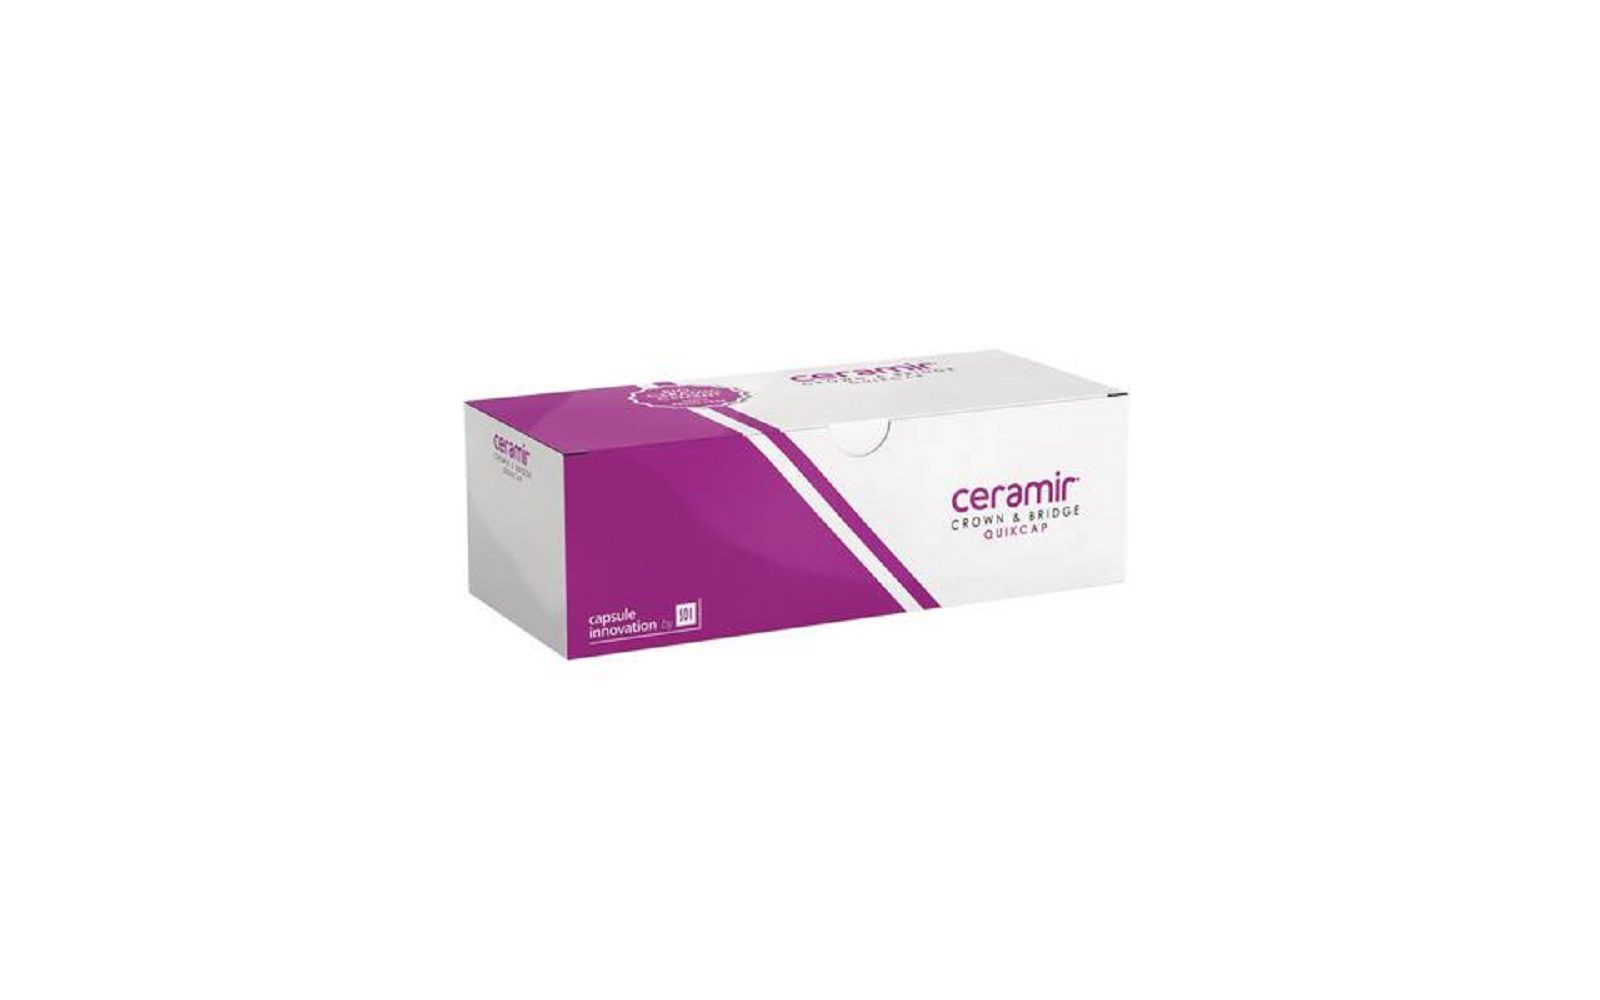 Ceramir® crown and bridge cement quikcap capsules - doxa dental ab